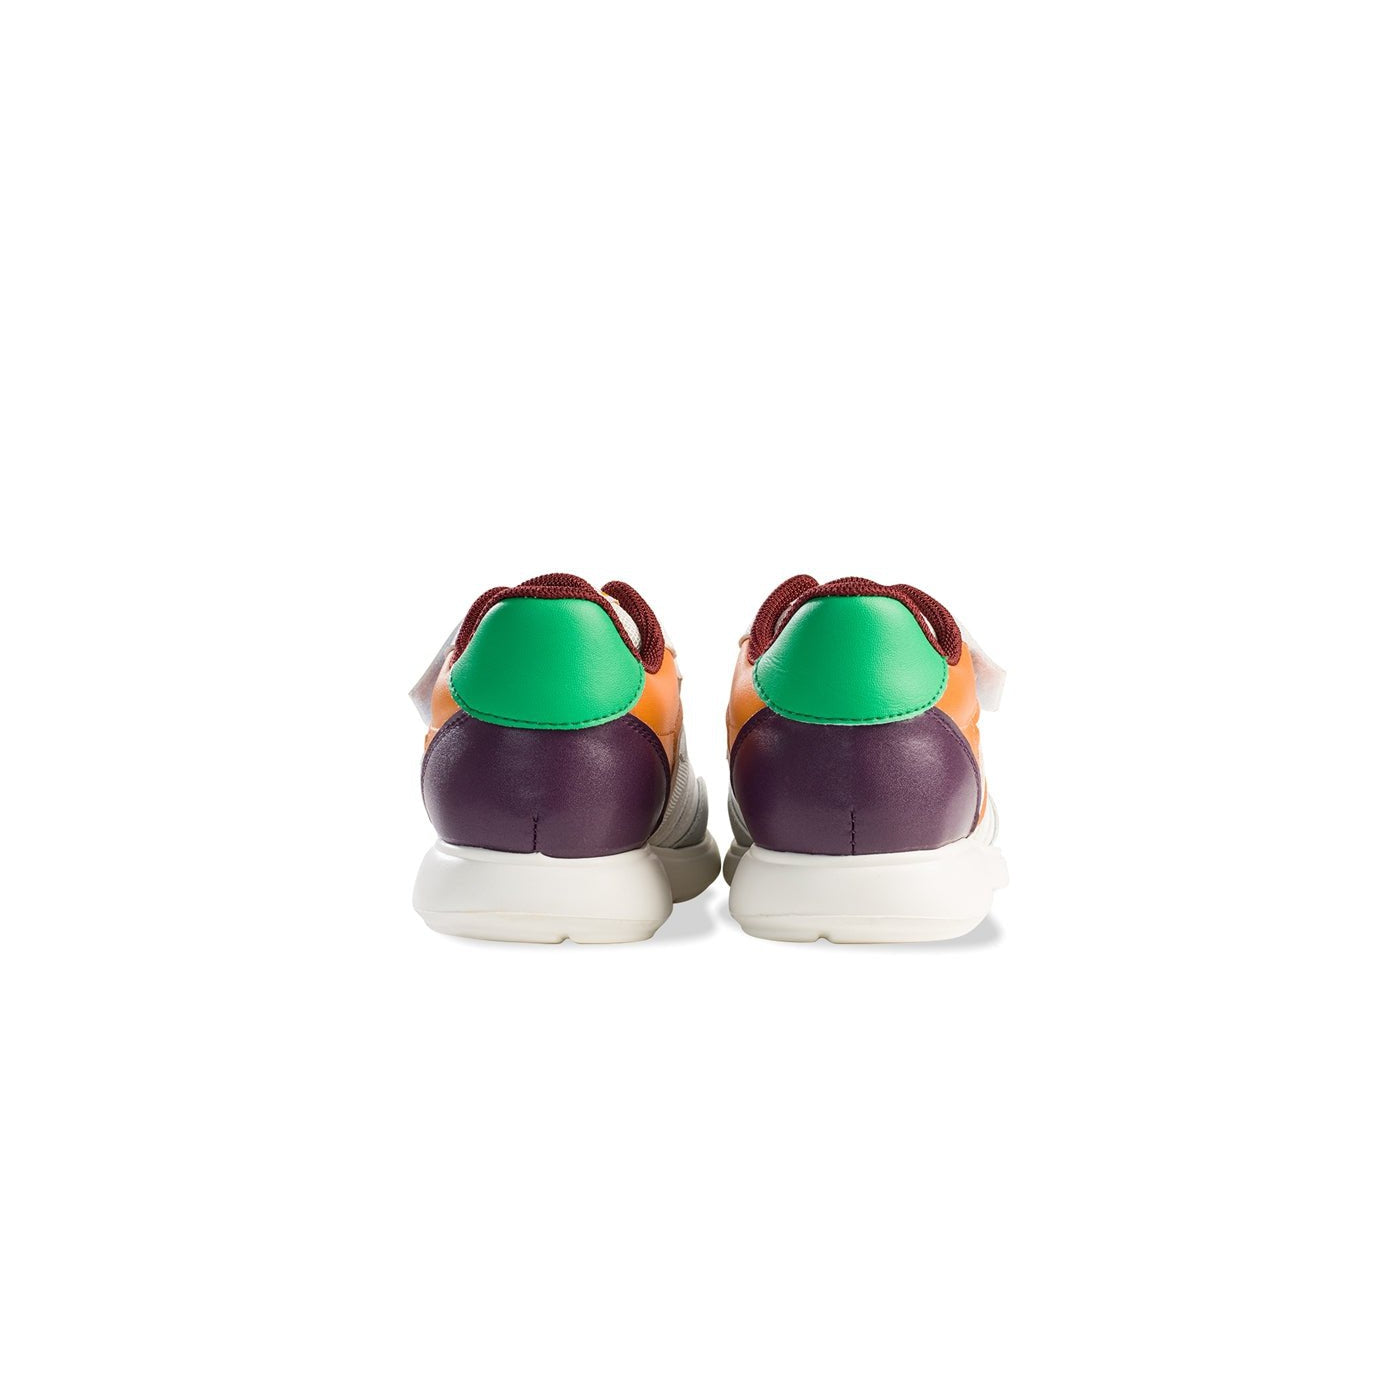 SODA Soft Sole Anti-slip Kids Purple Sneakers - 0cm